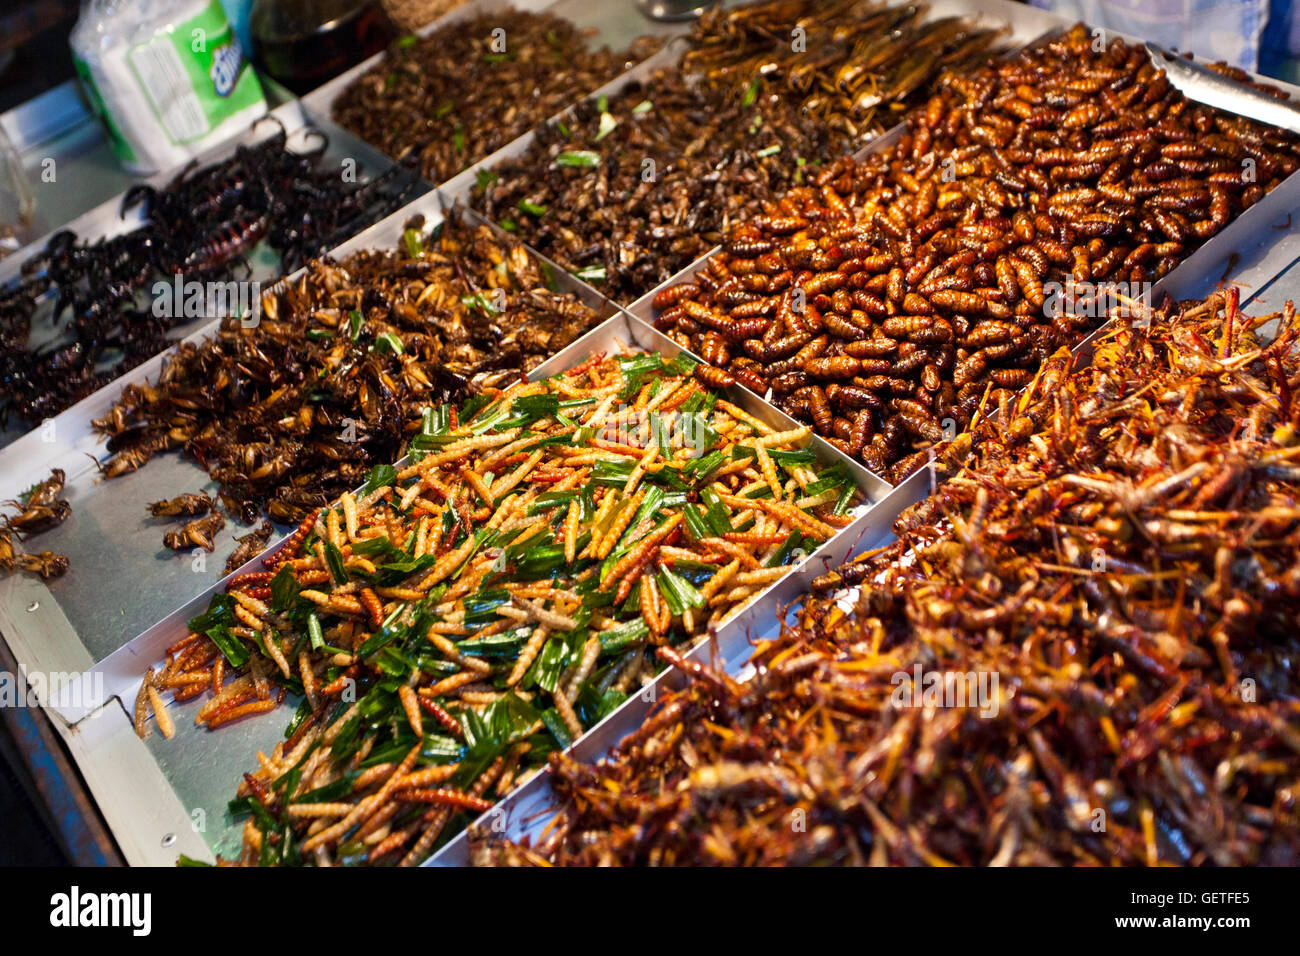 Cocinan escorpiones y otros invertebrados disponibles para comer comida de la calle de puestos de comida en la calle Khao San en Bangkok. Foto de stock